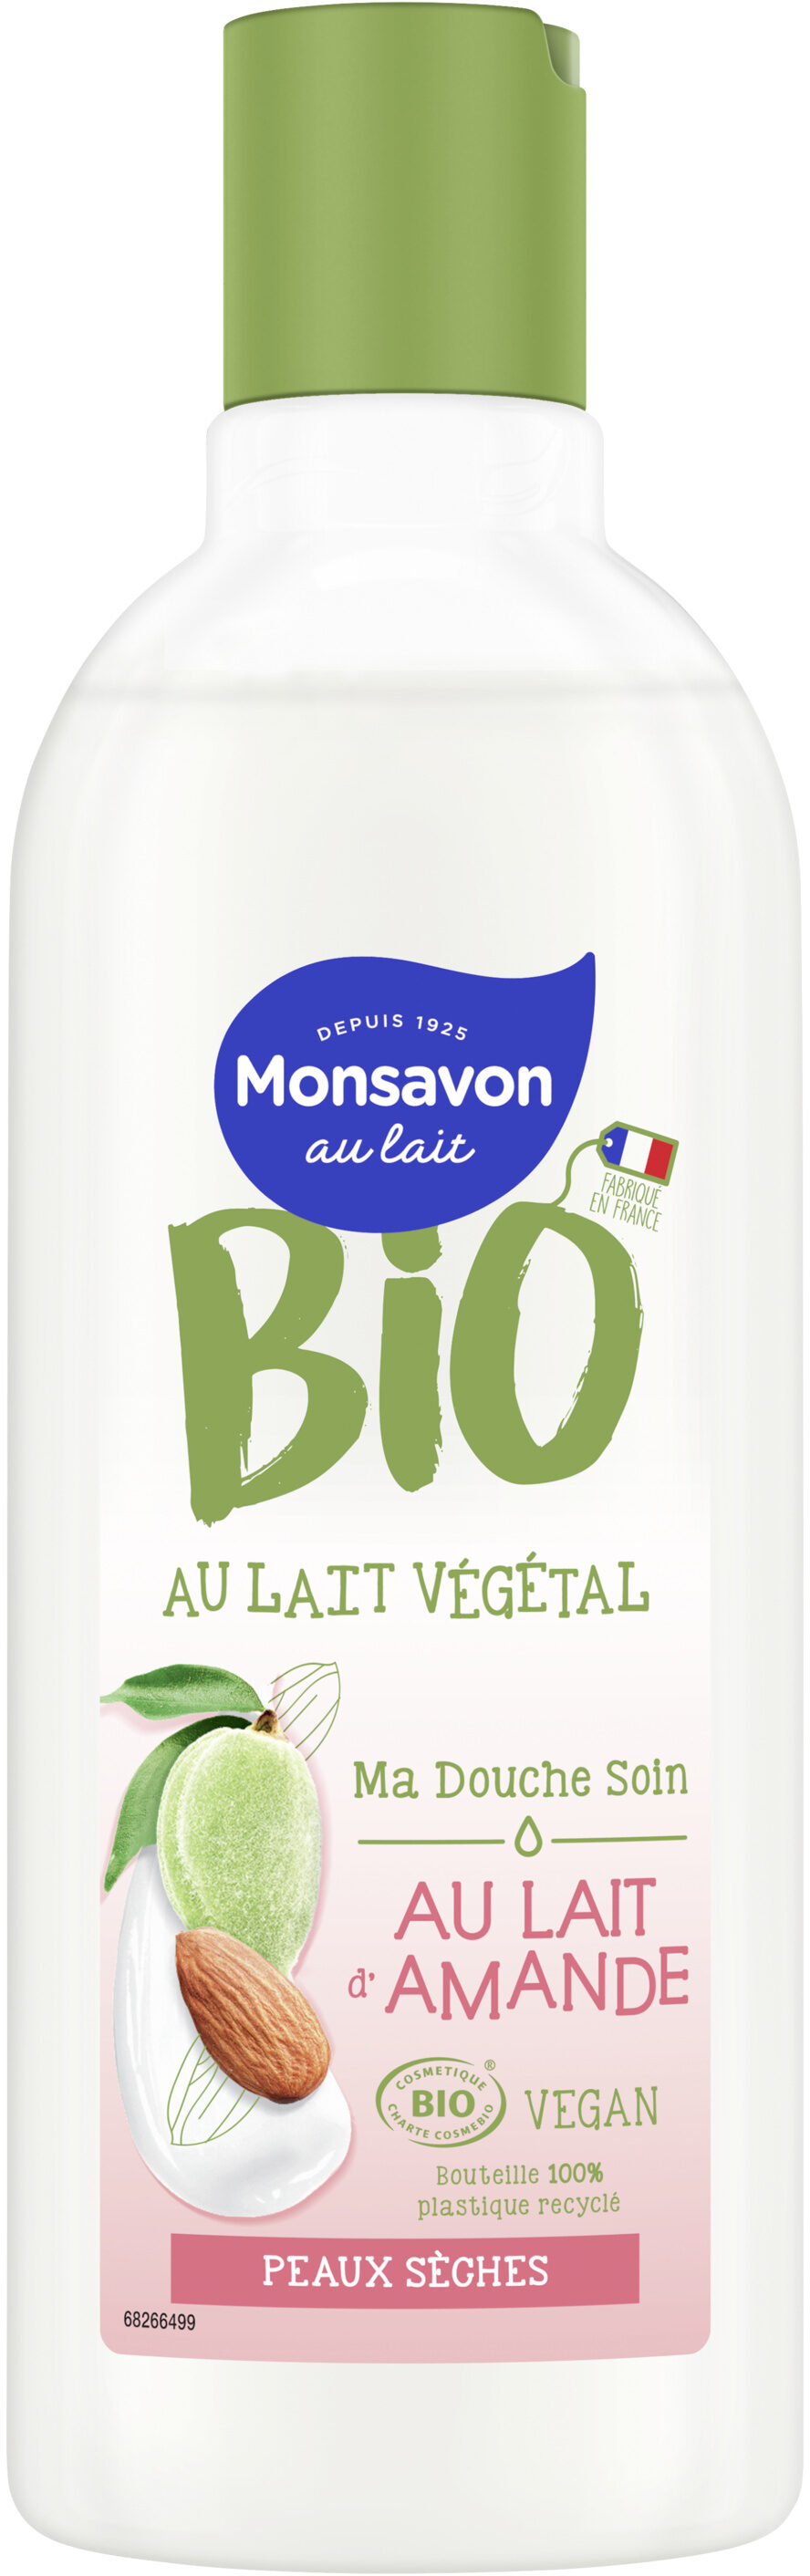 Monsavon Gel Douche Certifié Bio et Vegan Au Lait d'Amande 300ml - Product - fr